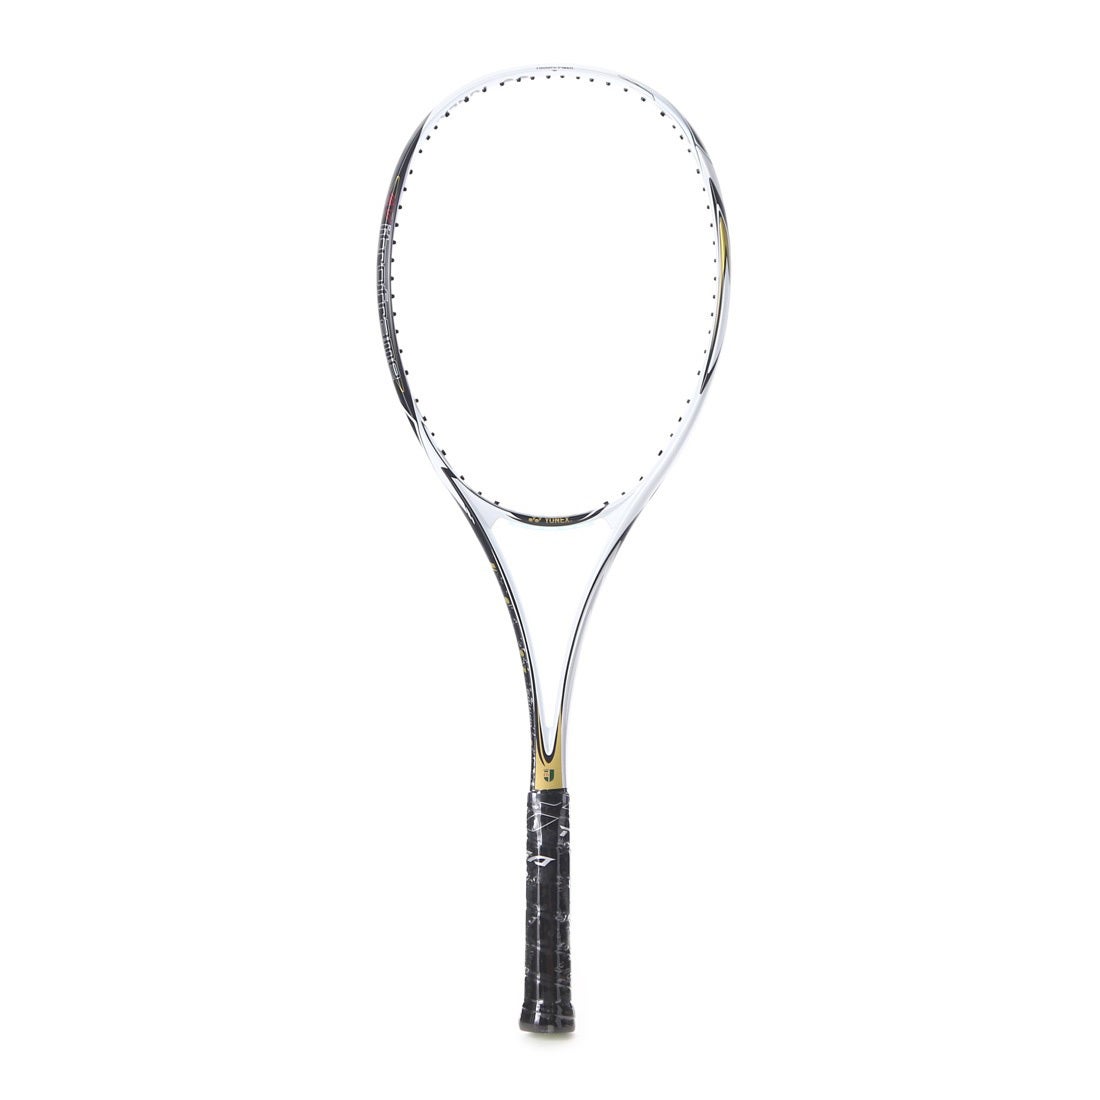 ヨネックス YONEX ユニセックス 軟式テニス 未張りラケット ネクシーガ70Vリミテッド NXG70VLD 118